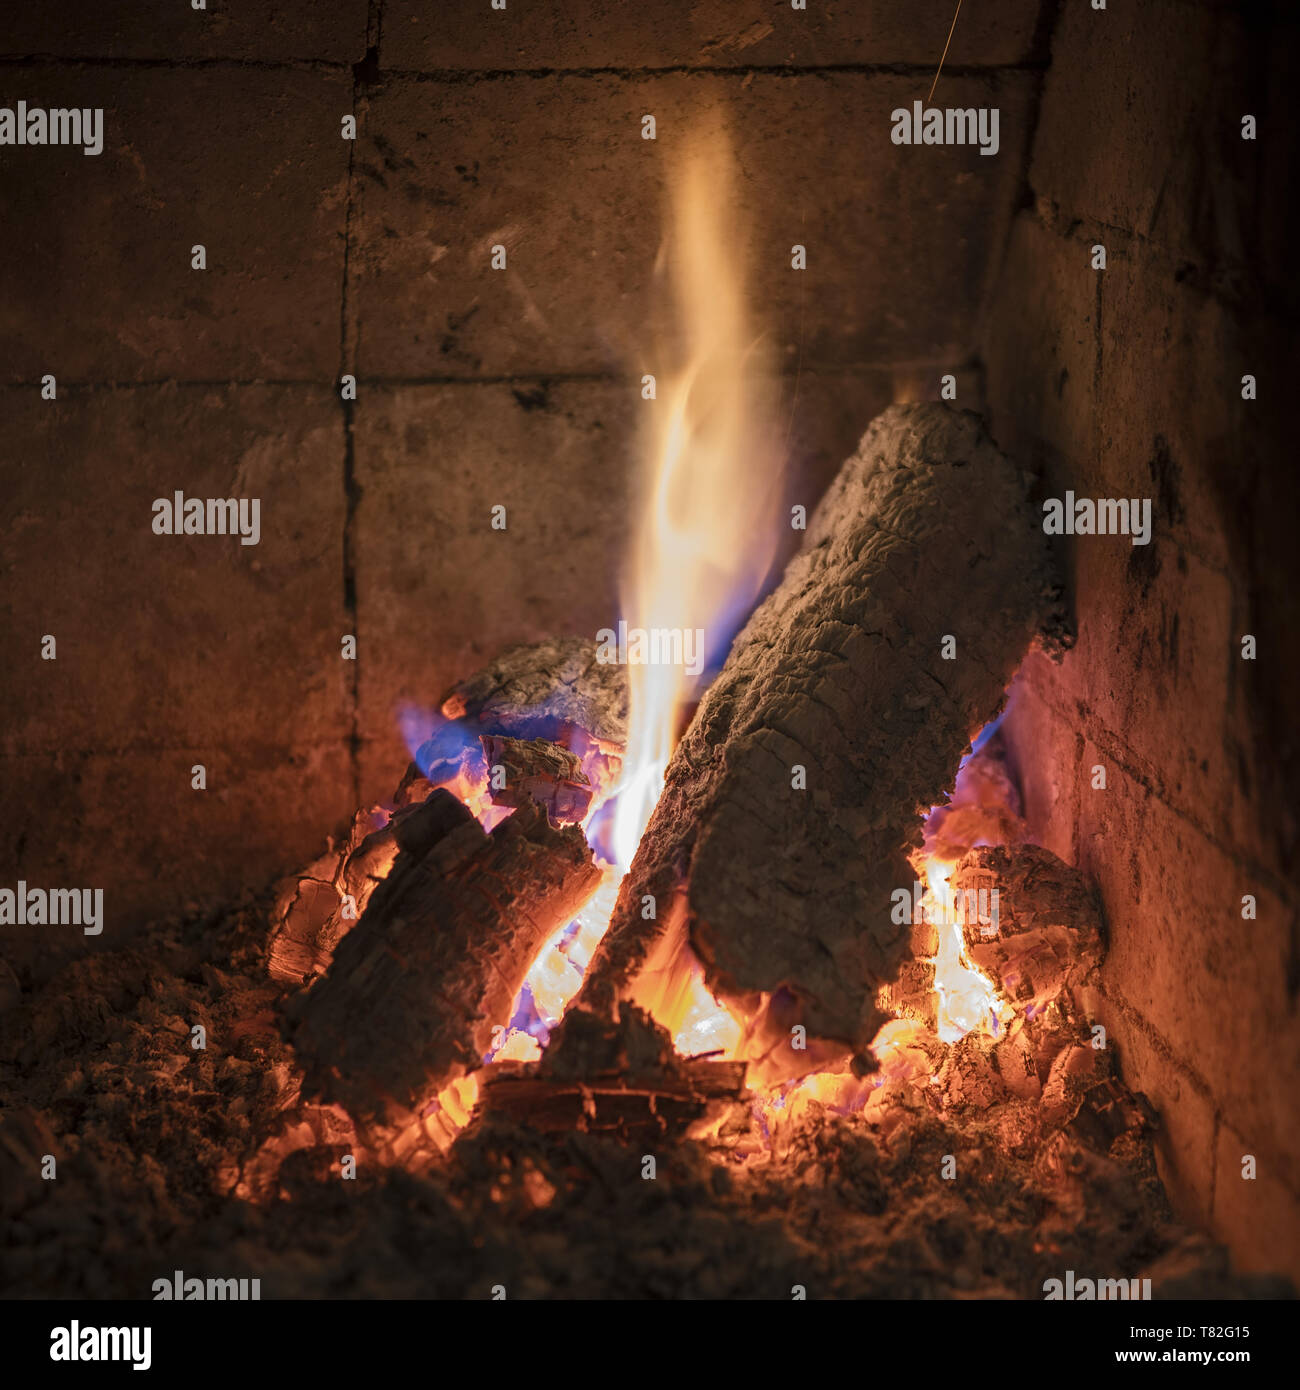 Burning logs, pieces of wood in the fireplace. Brennende Holzscheite, Holzstücke im Kamin. Płonące polano, kawałki drewna w kominku. Stock Photo